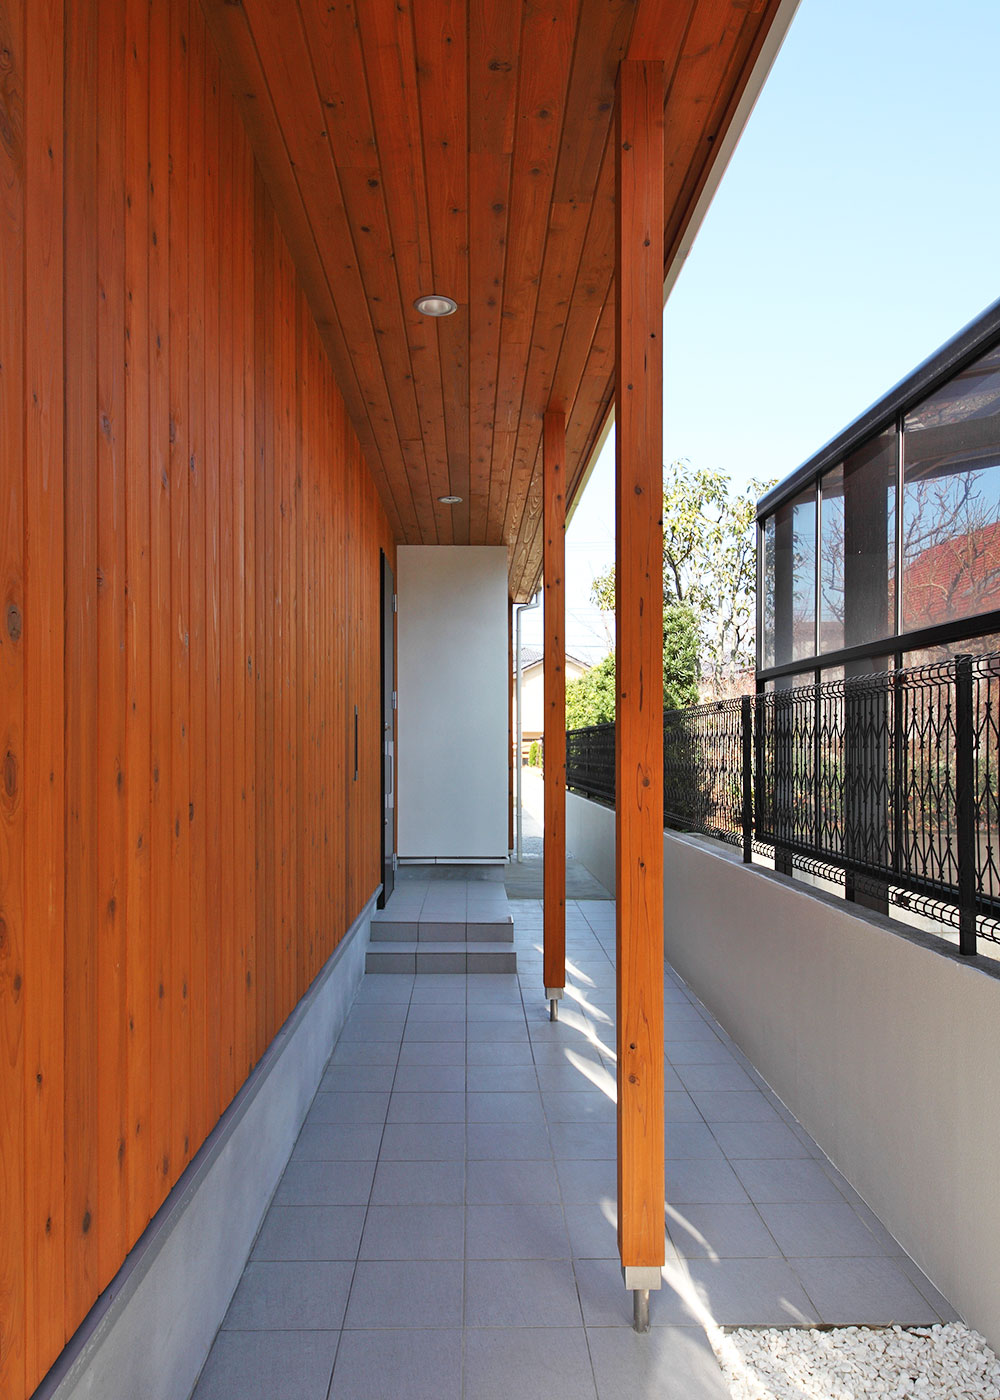 玄関 エントランスポーチ施工例 デザイン住宅 リノベーションの1010house